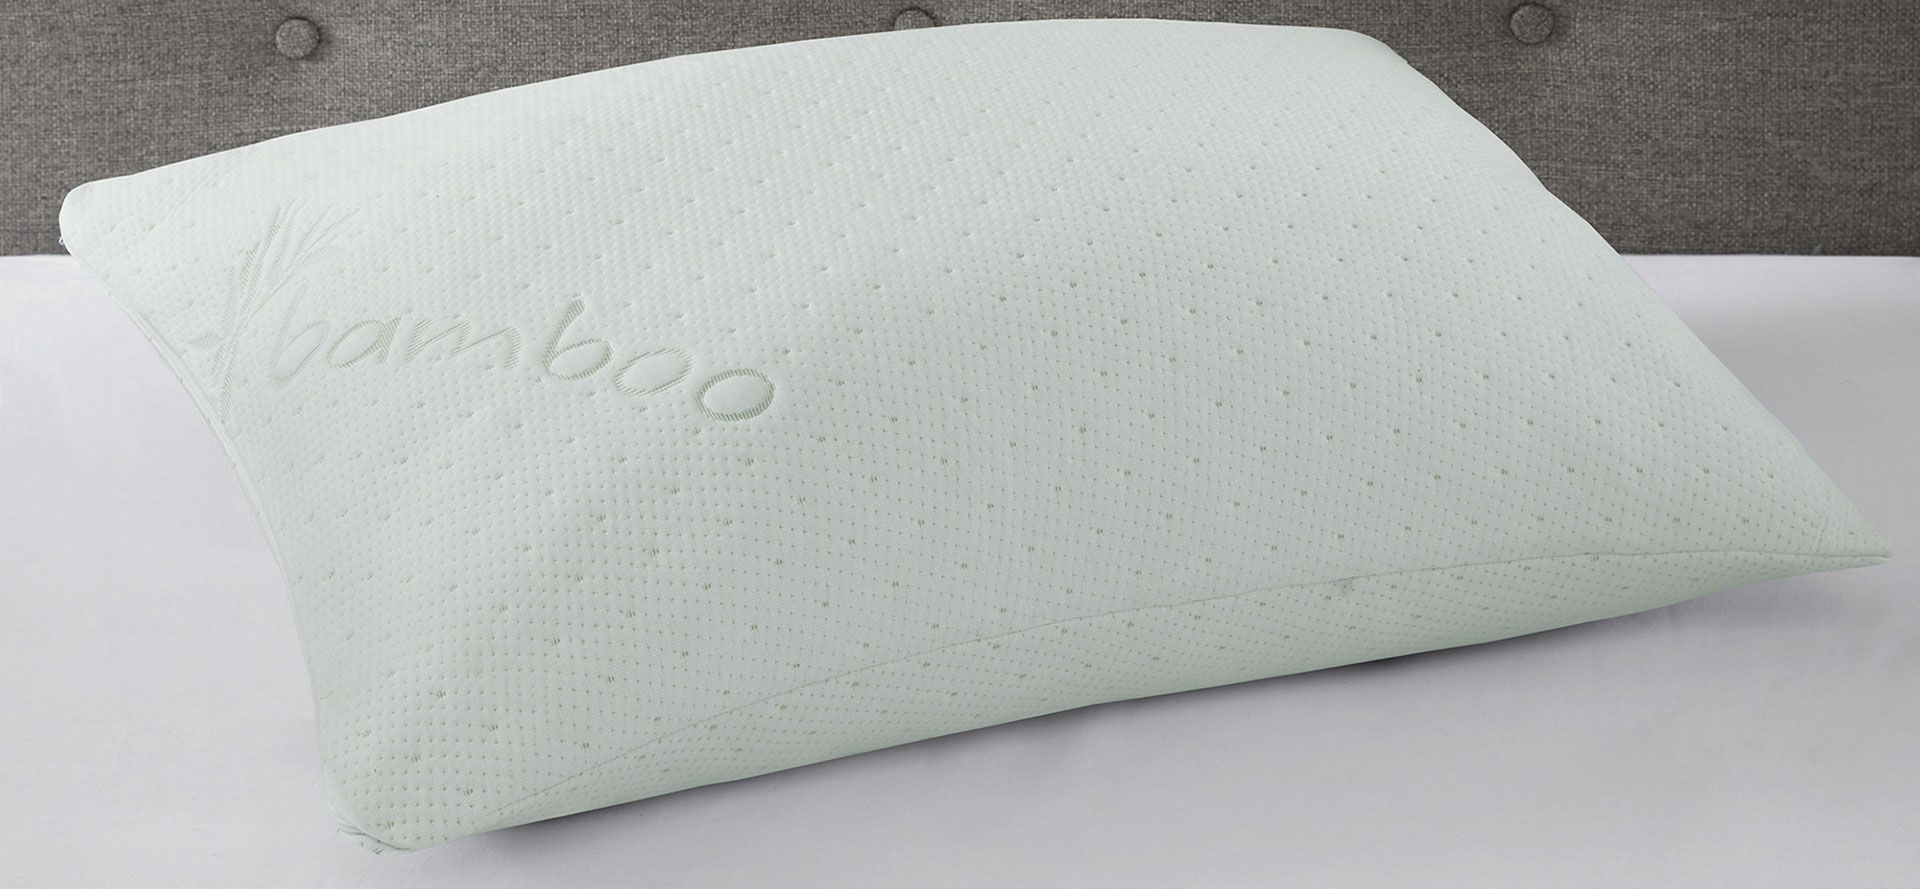 Bamboo Bed Pillows.